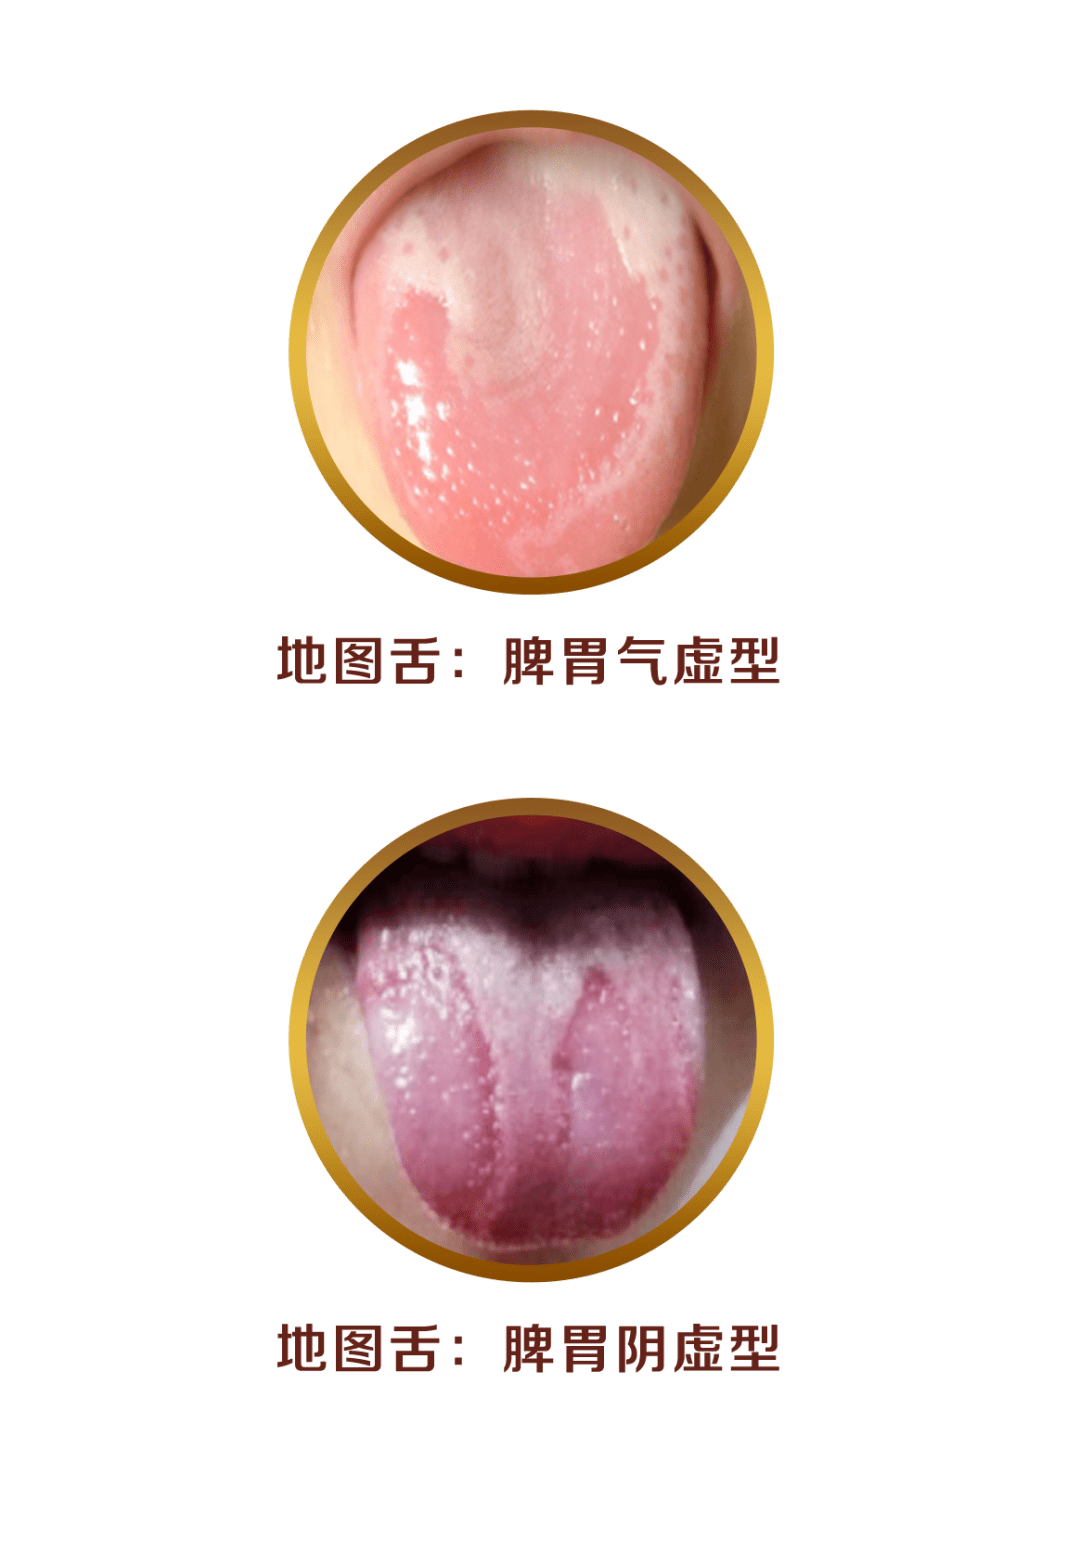 出现地图舌,说明 脾胃虚寒已经比较严重,通常都会伴随过敏性疾病和